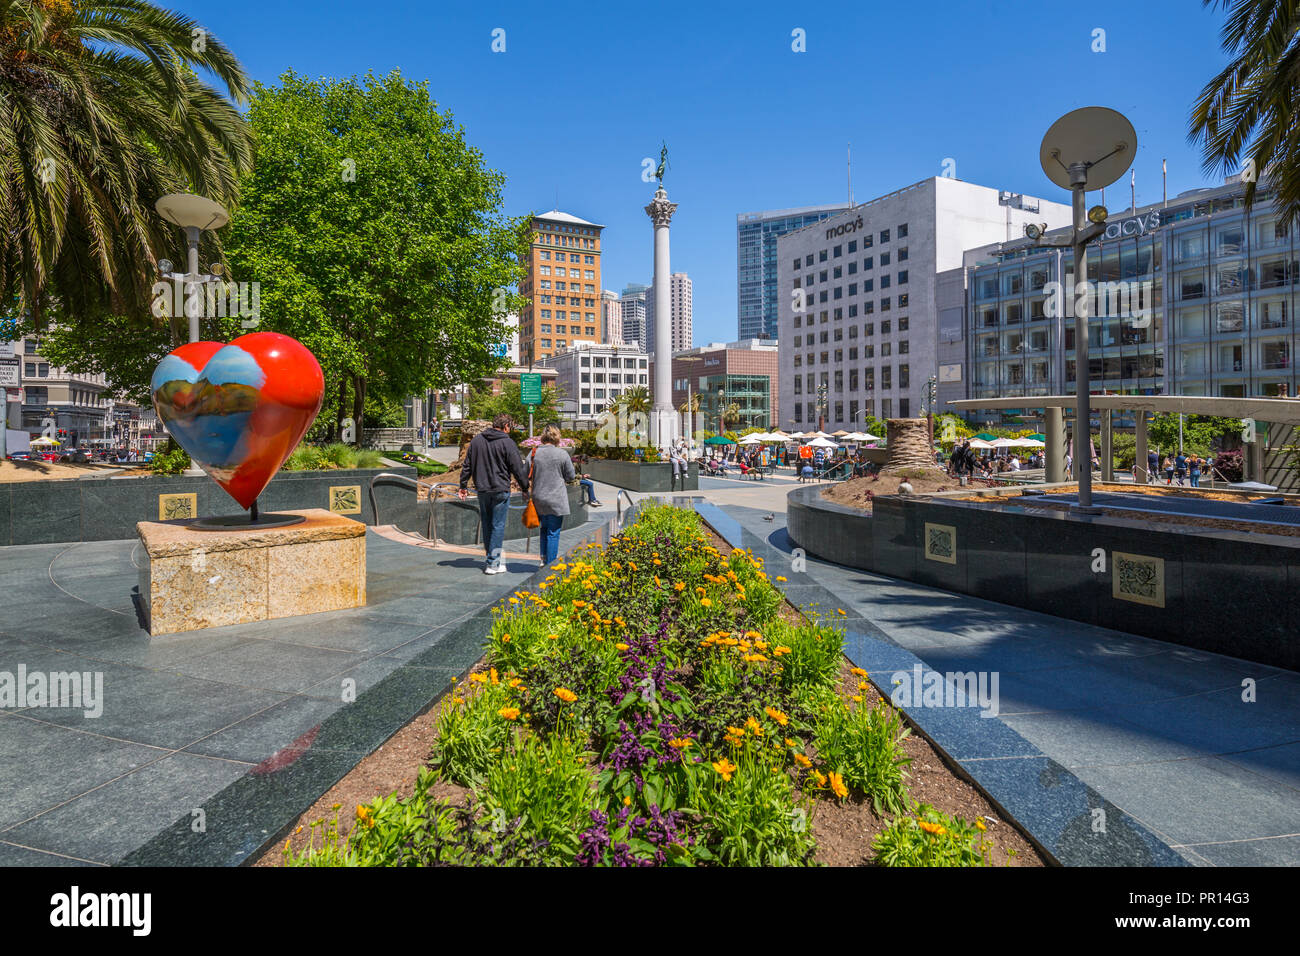 Voir des bâtiments et des visiteurs de l'Union Square, San Francisco, Californie, États-Unis d'Amérique, Amérique du Nord Banque D'Images